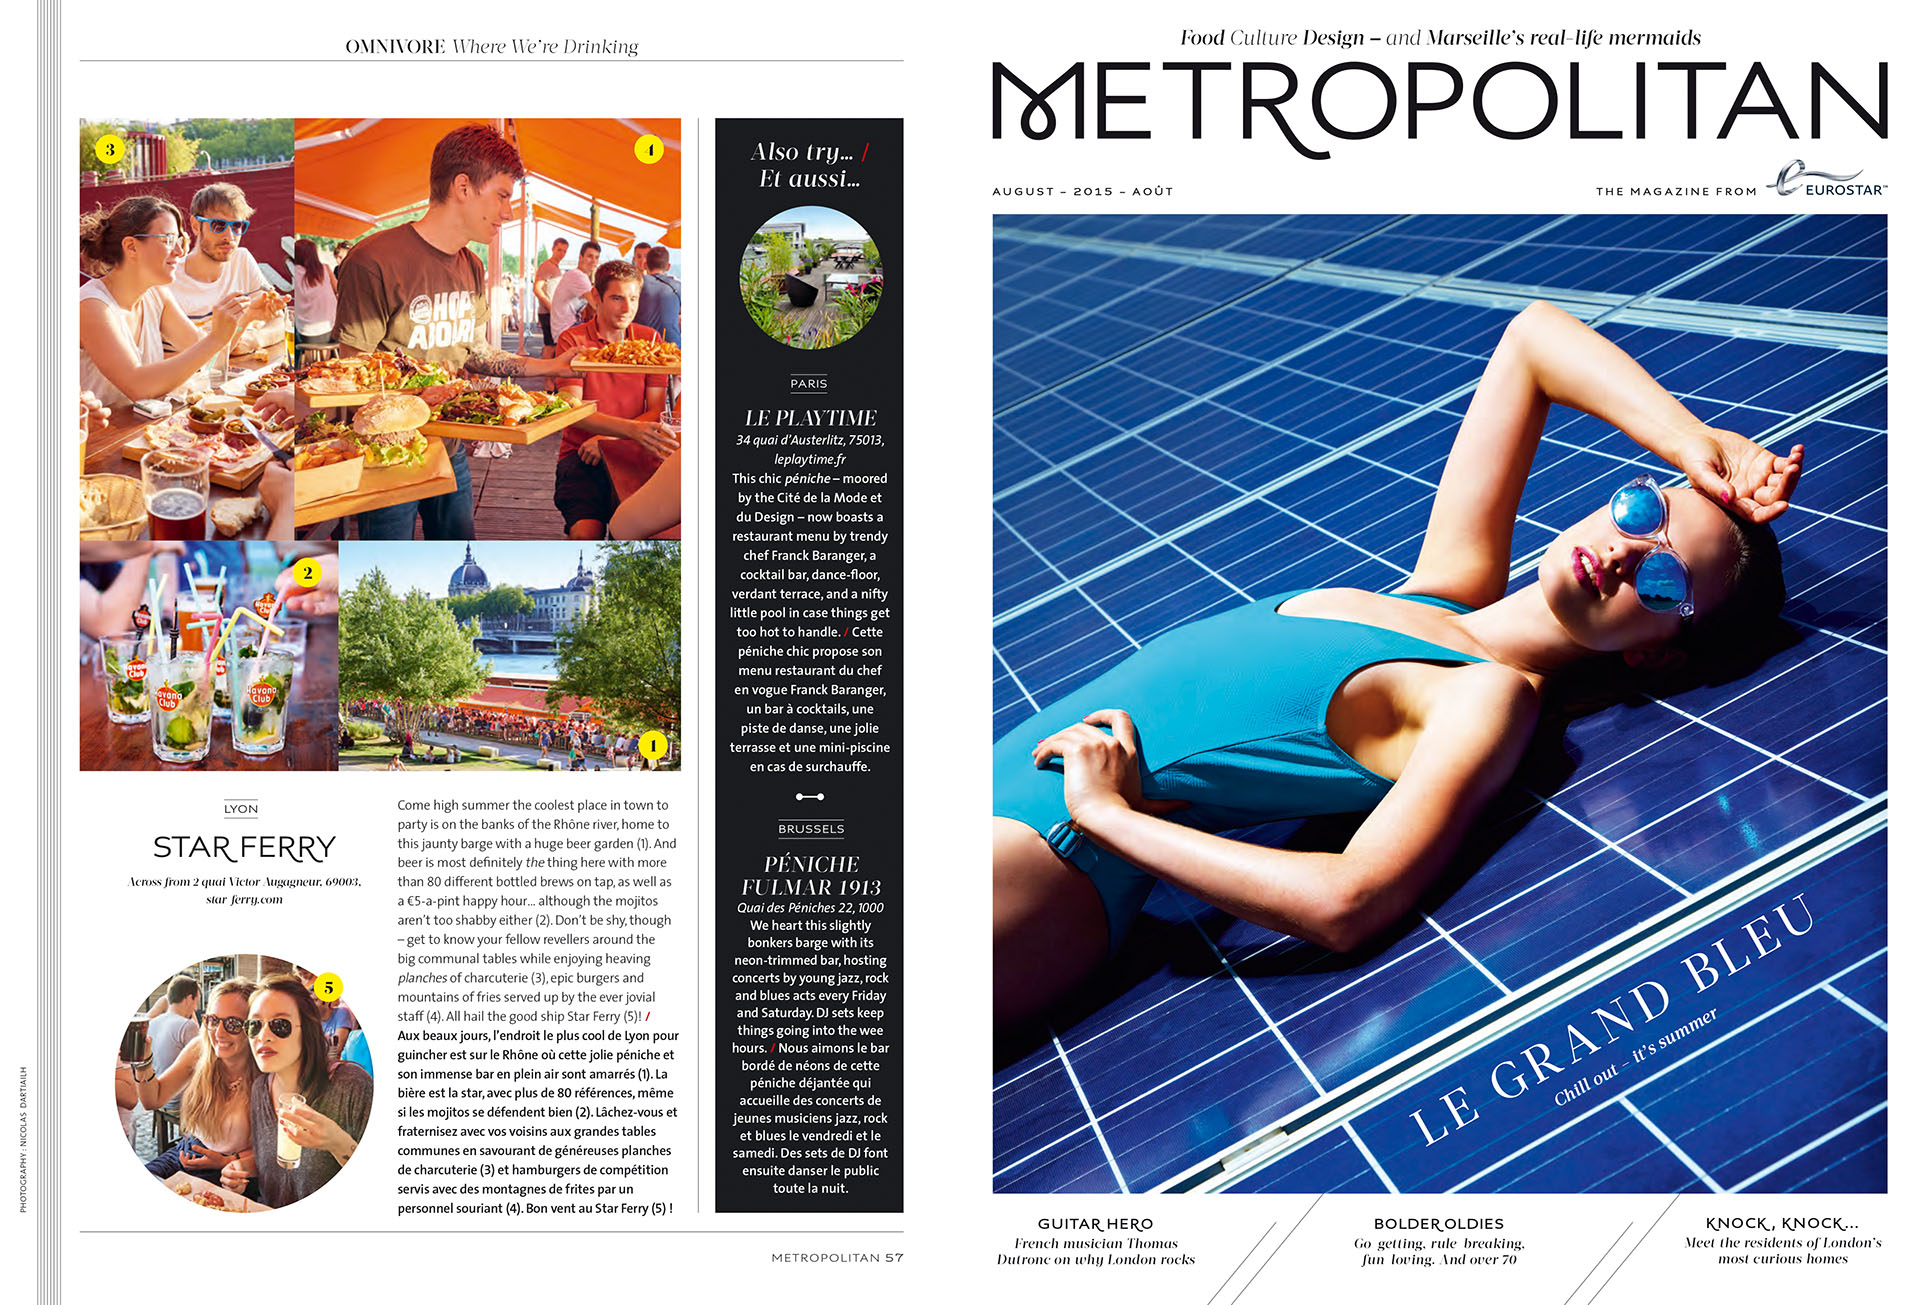 Eurostar Magazine - Metropolitan - Where we're drinking